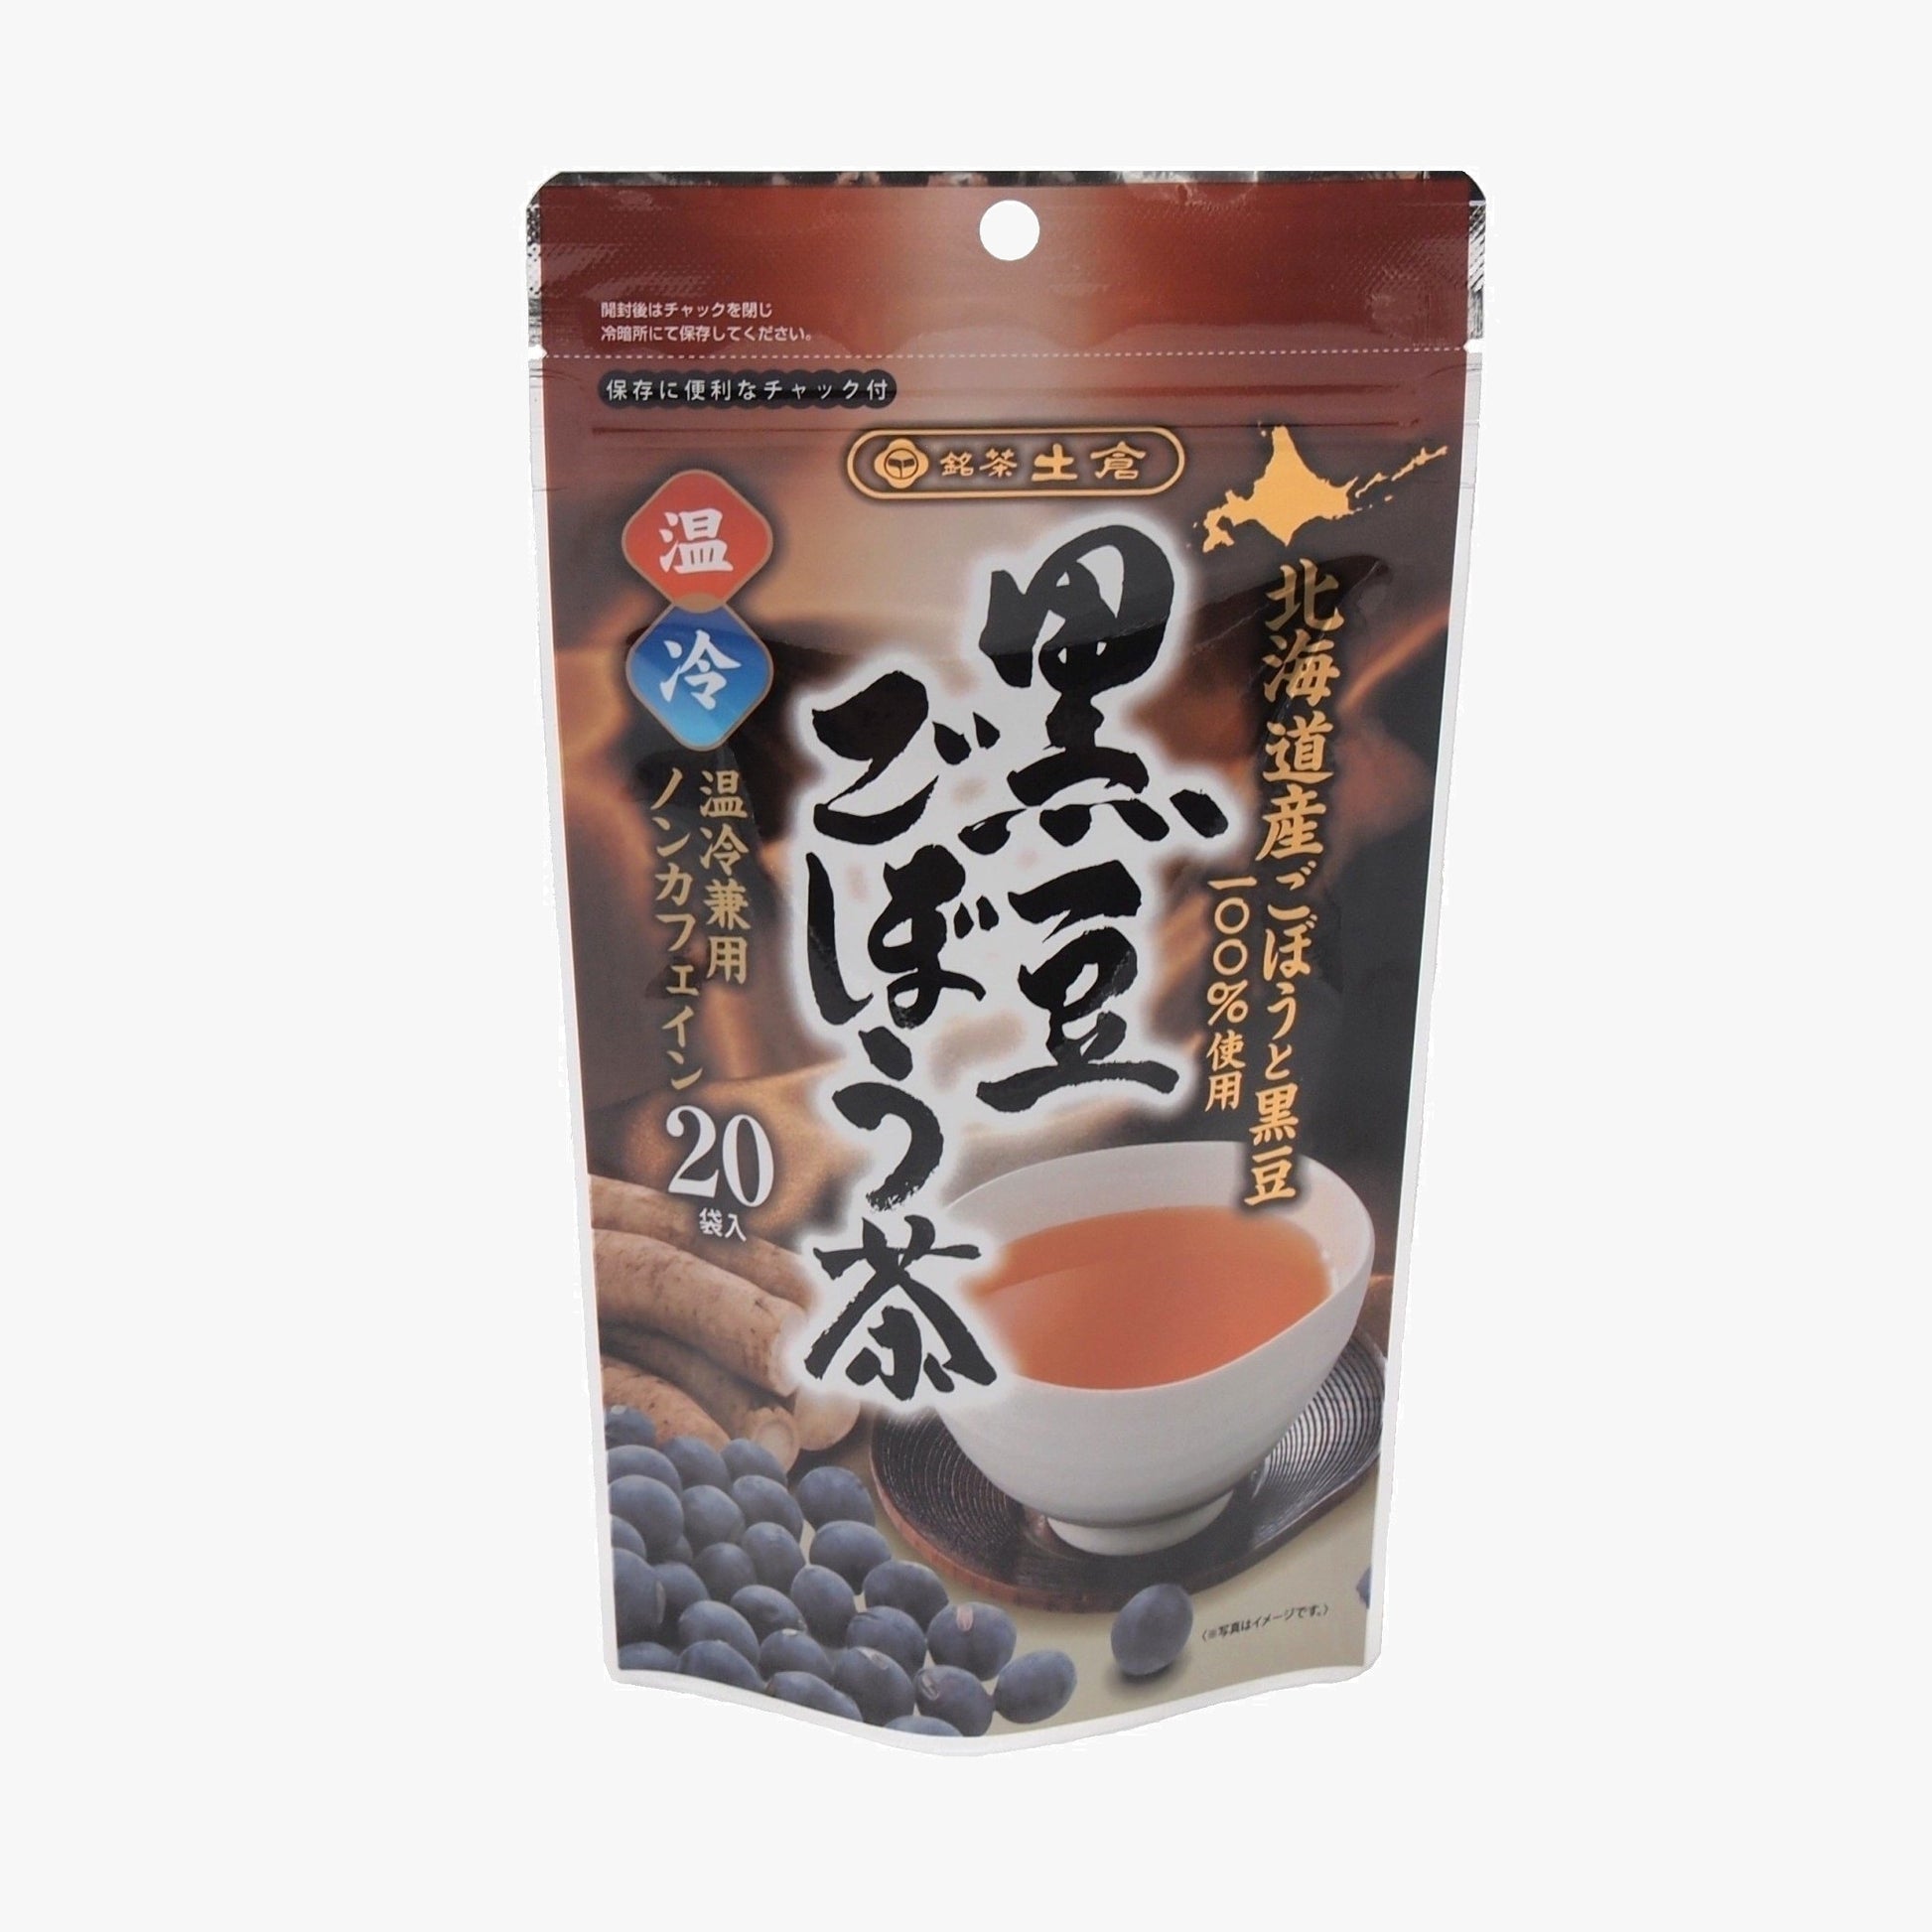 土倉 北海道産 黒豆ごぼう茶 20袋入